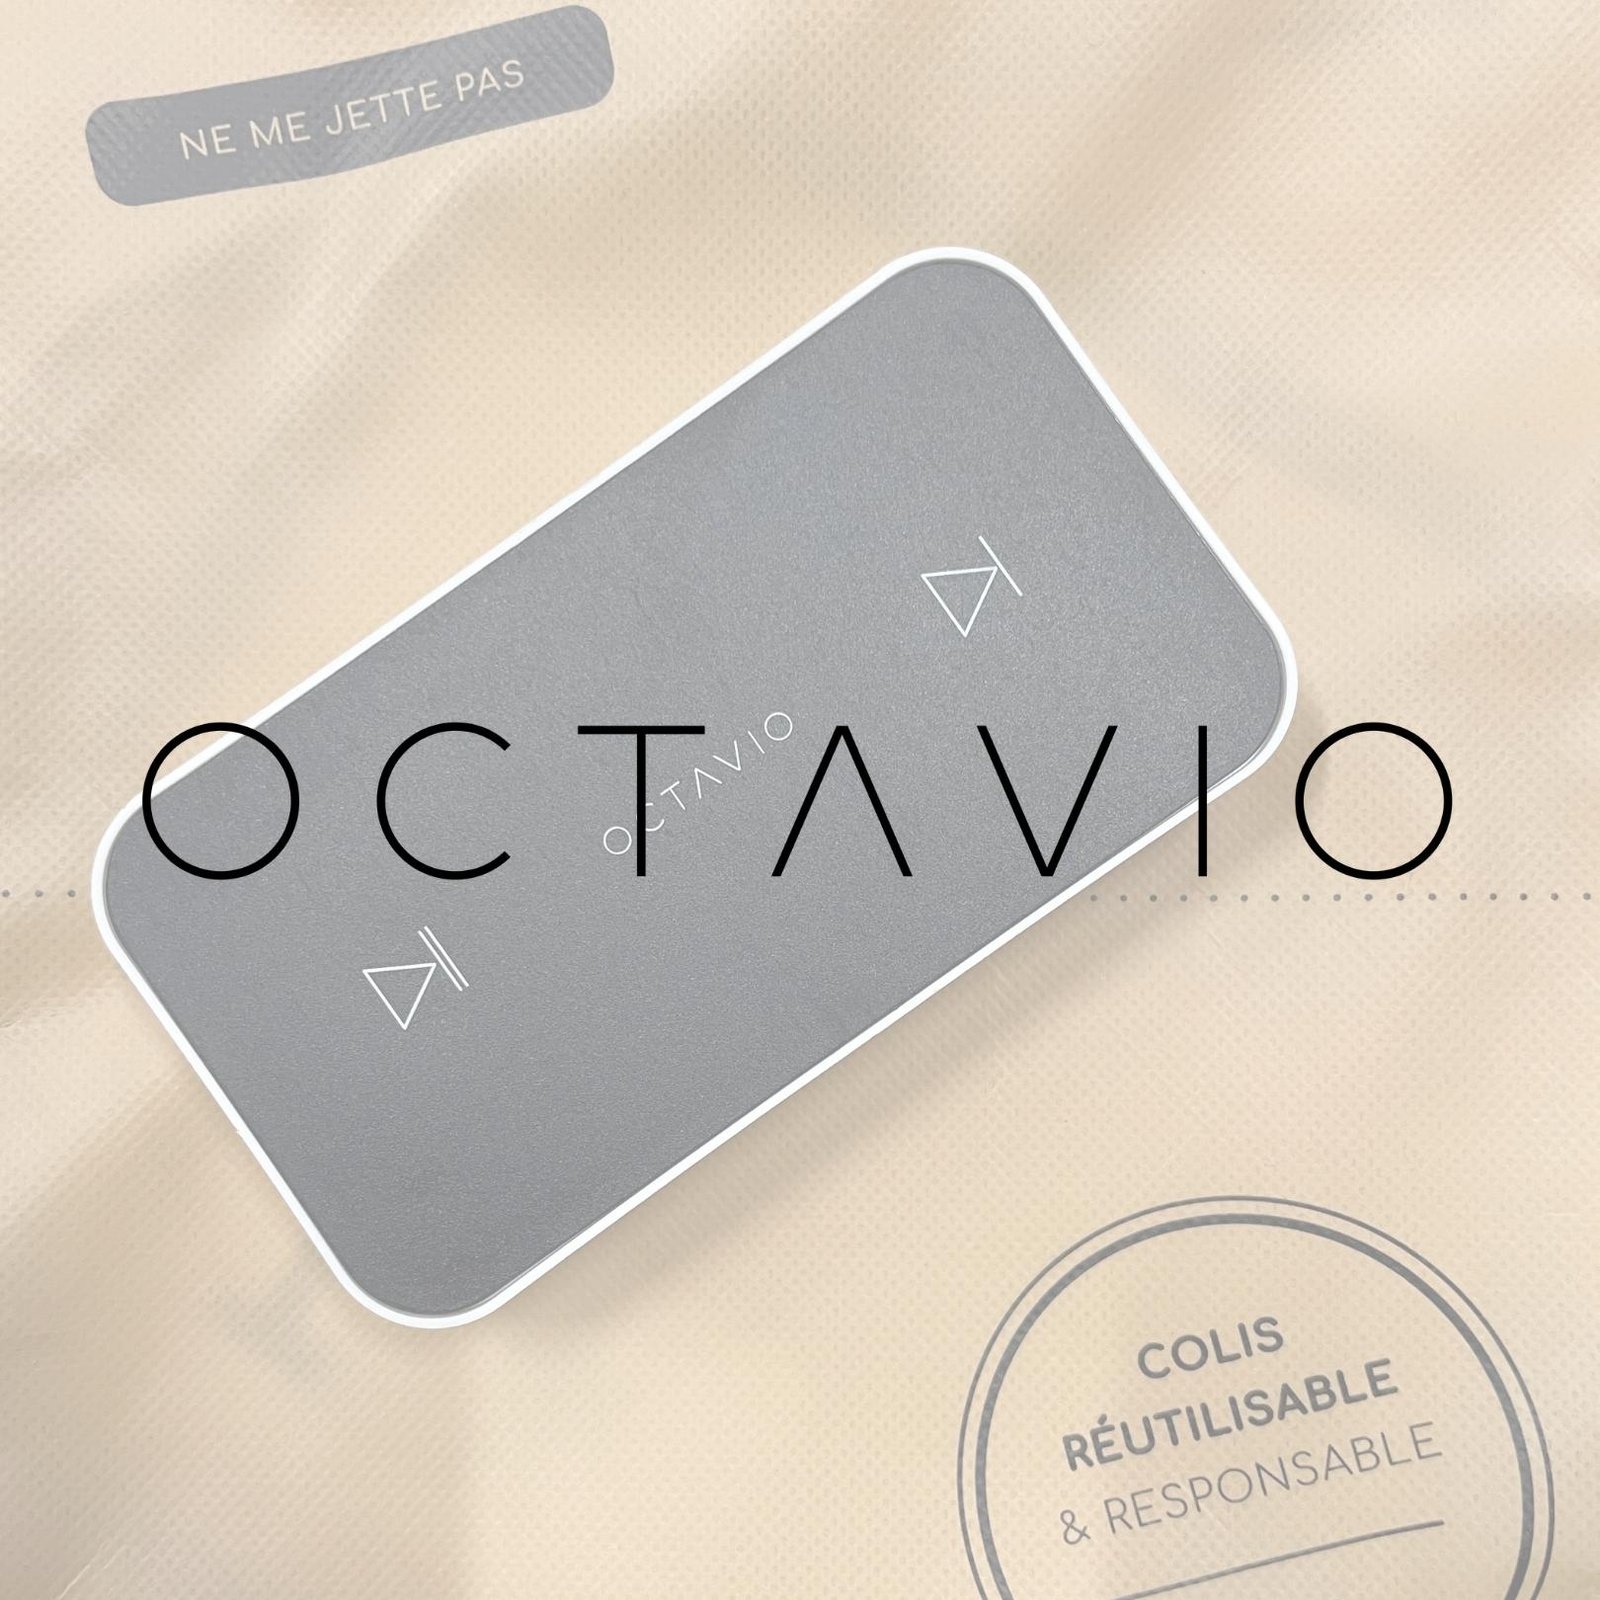 octavio audio emballage réutilisable